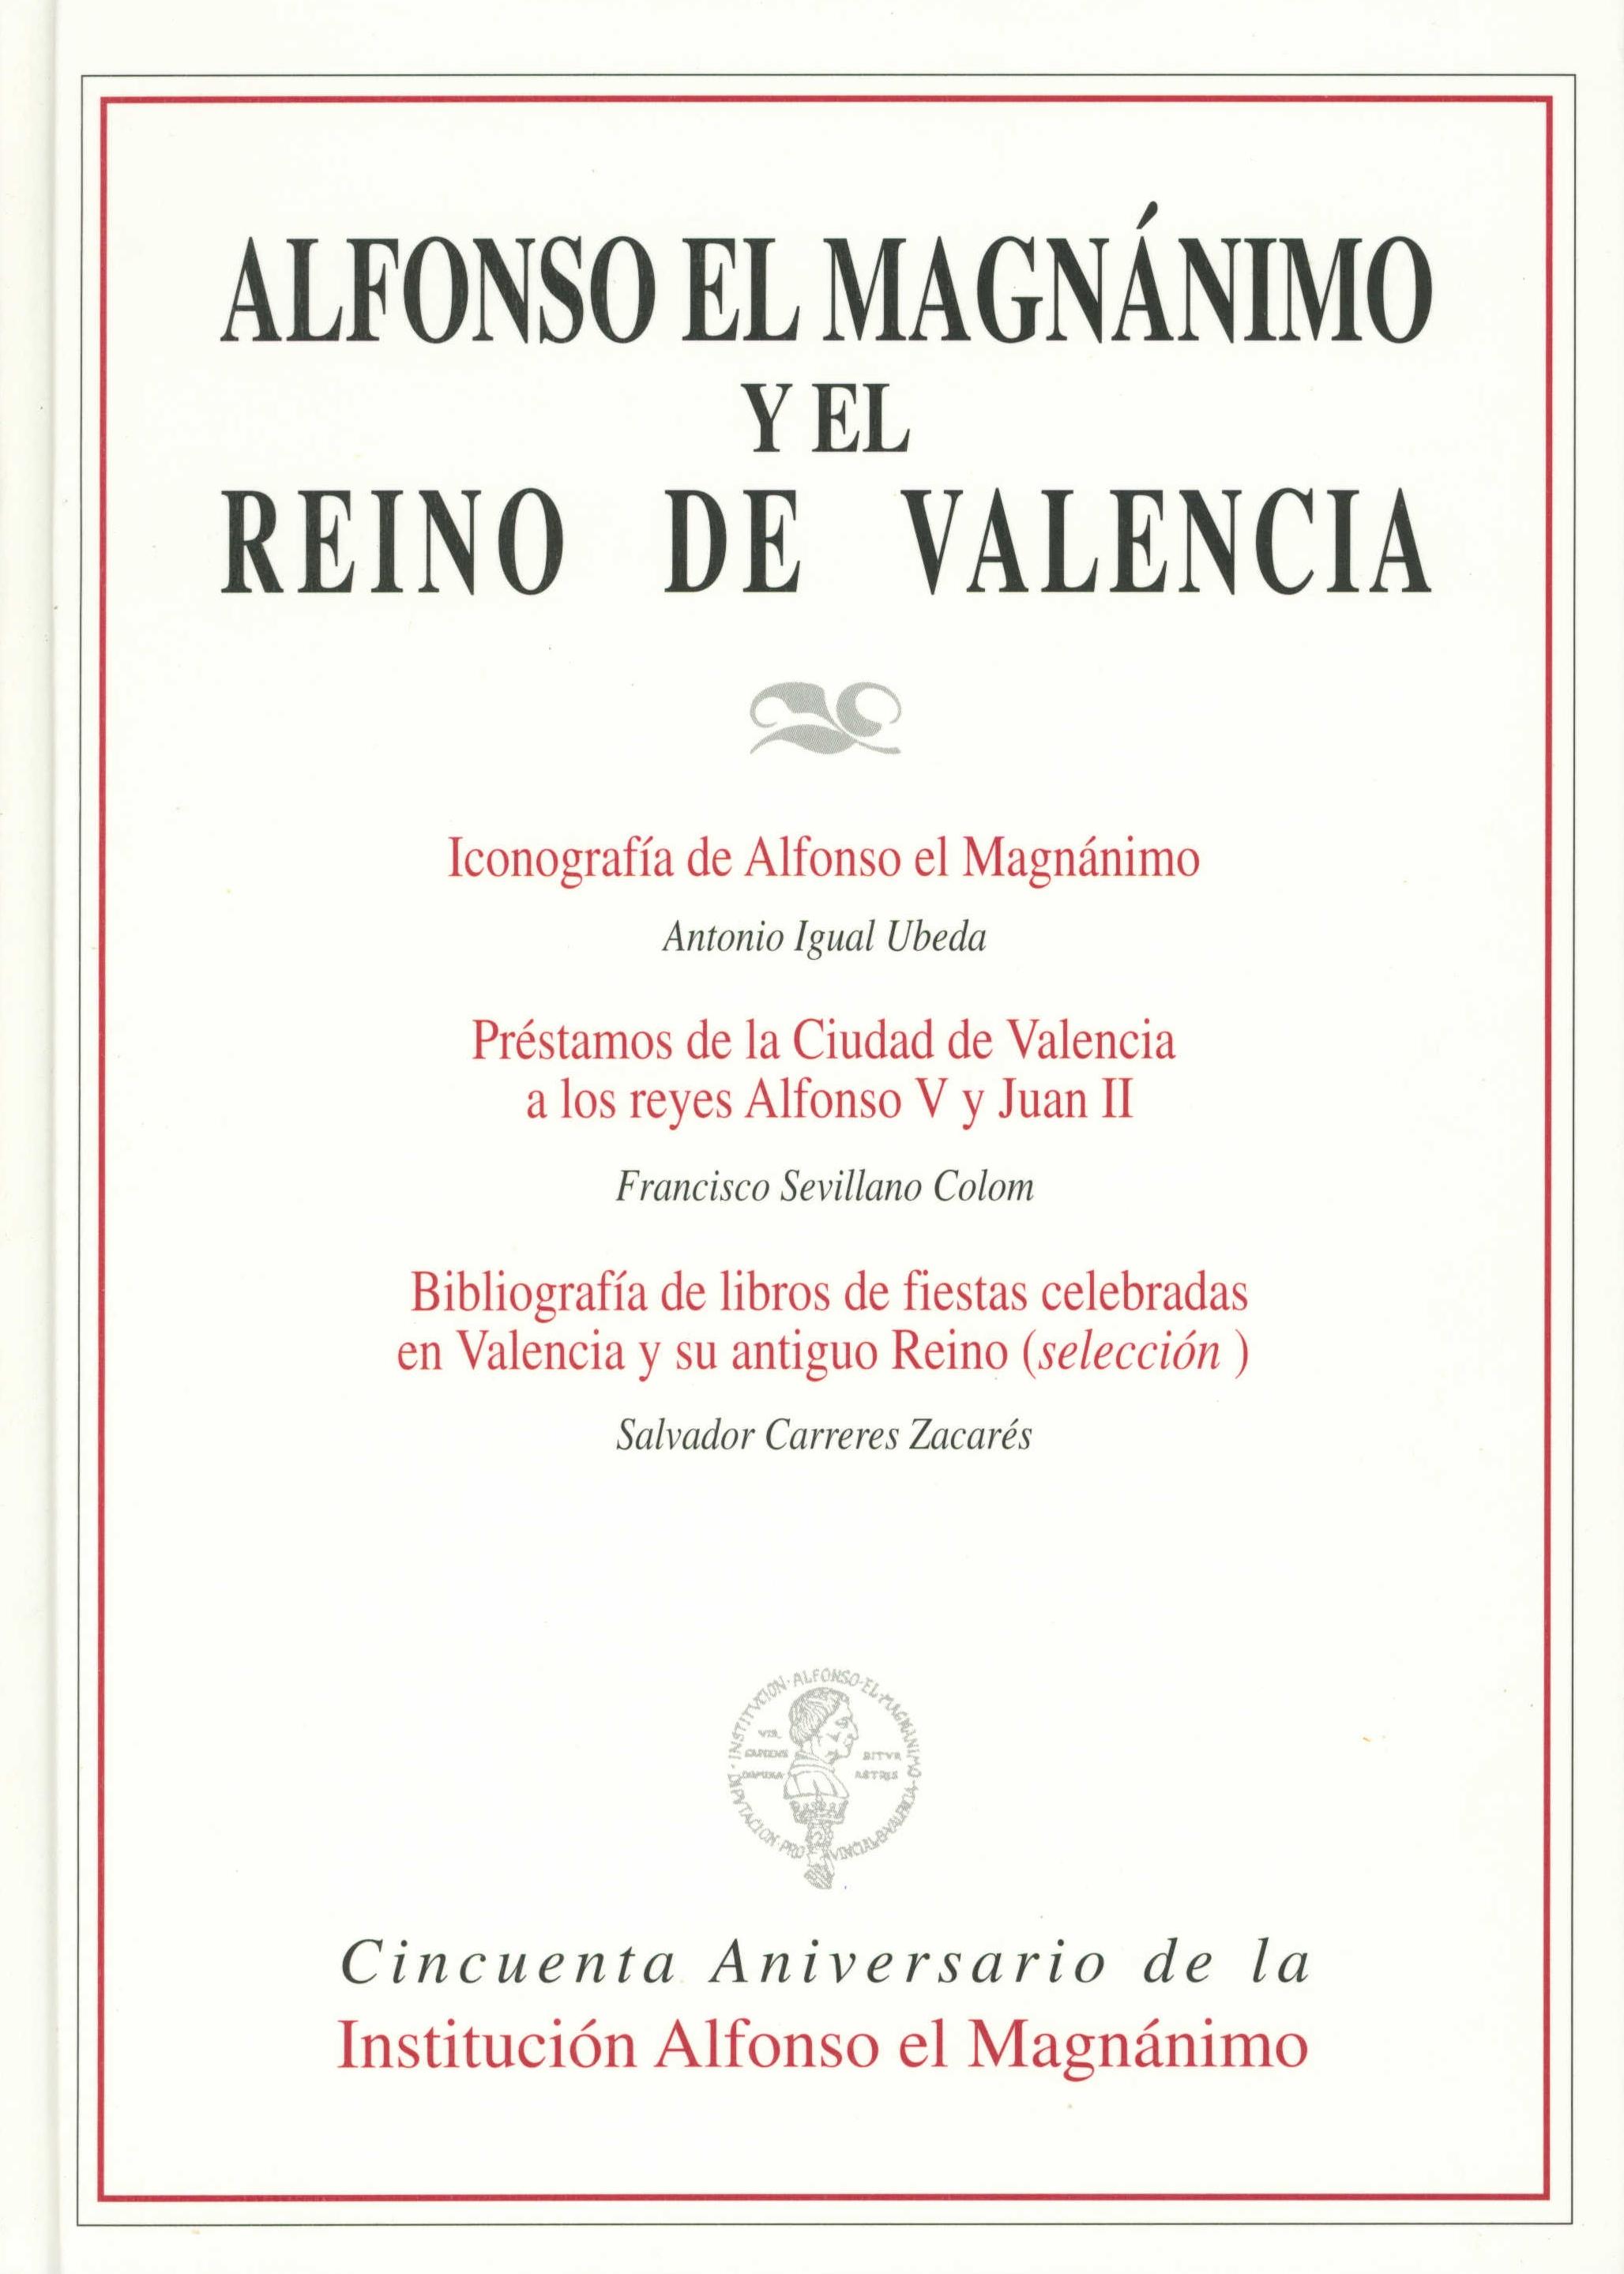 Alfonso el Magnánimo y el Reino de Valencia "ICONOGRAFIA... PRESTAMOS... BIBLIOGRAFIA". 